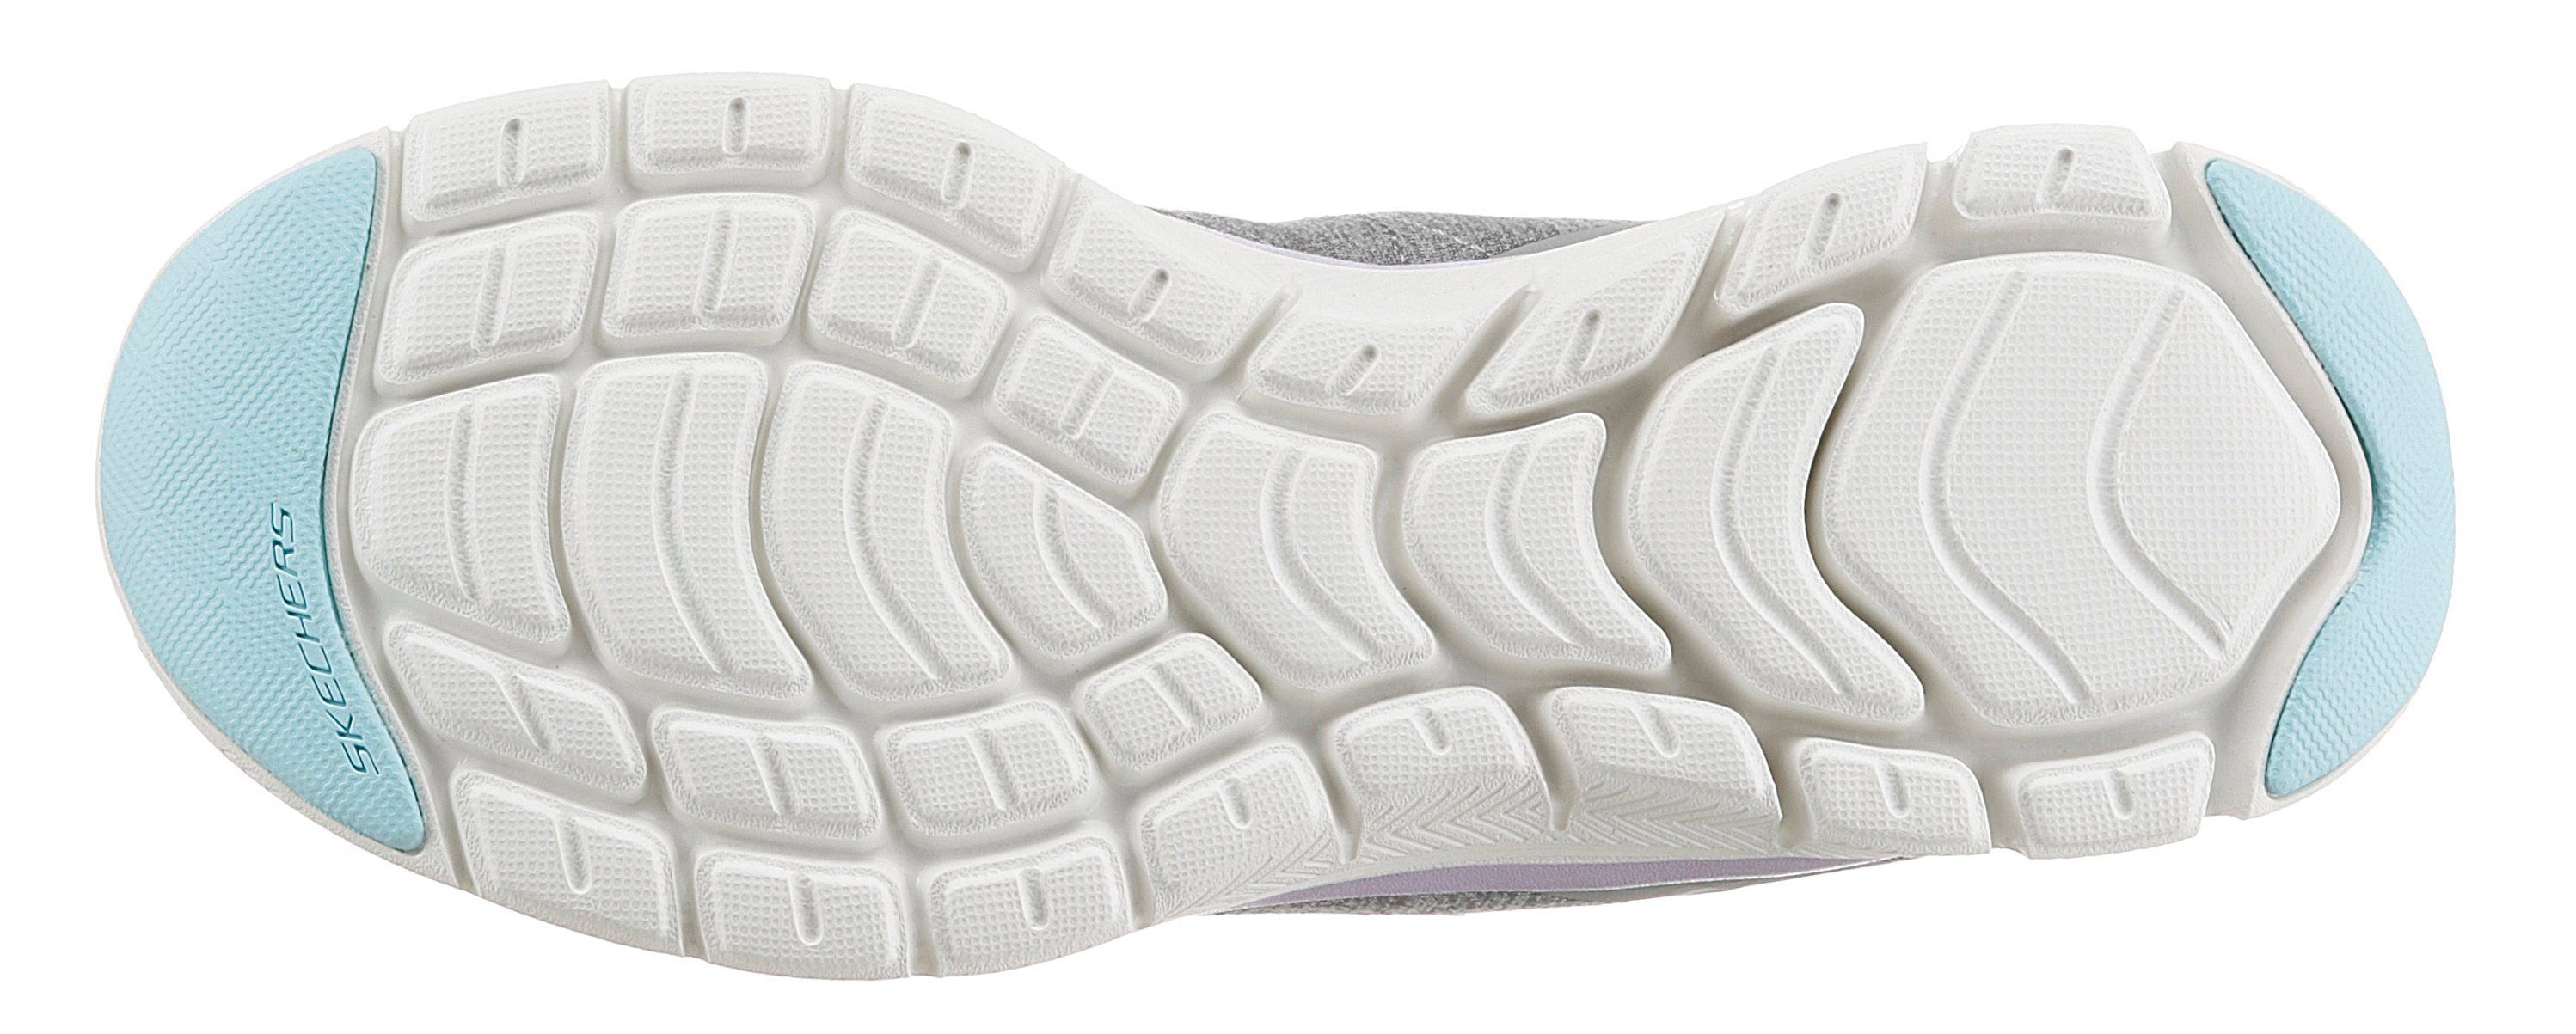 Skechers FLEX APPEAL - Maschinenwäsche Sneaker BRILLIANT für 4.0 grau-flieder-türkis geeignet VIEW